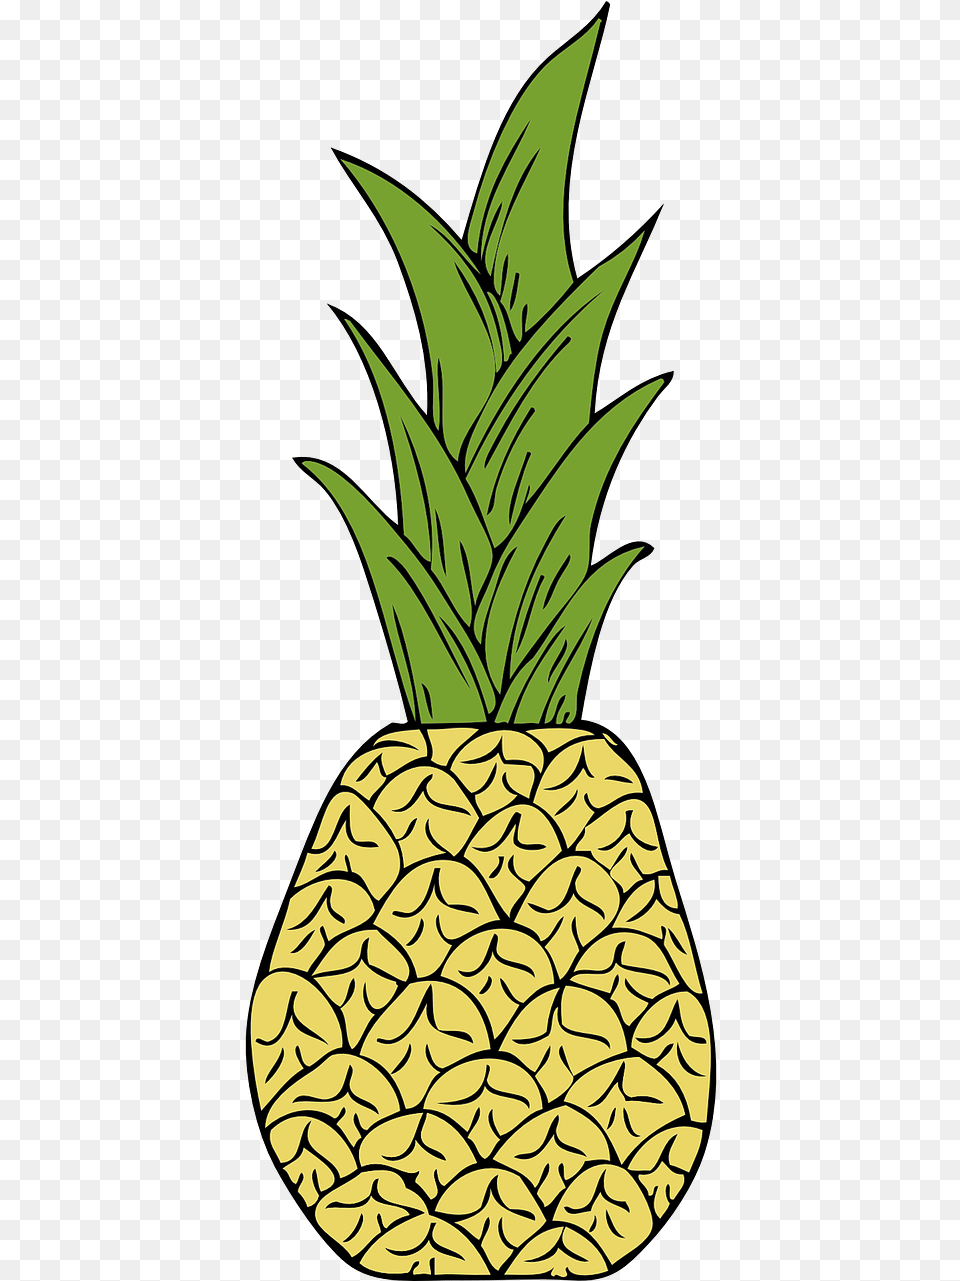 Gambar Daun Nenas Lukisan, Food, Fruit, Pineapple, Plant Free Png